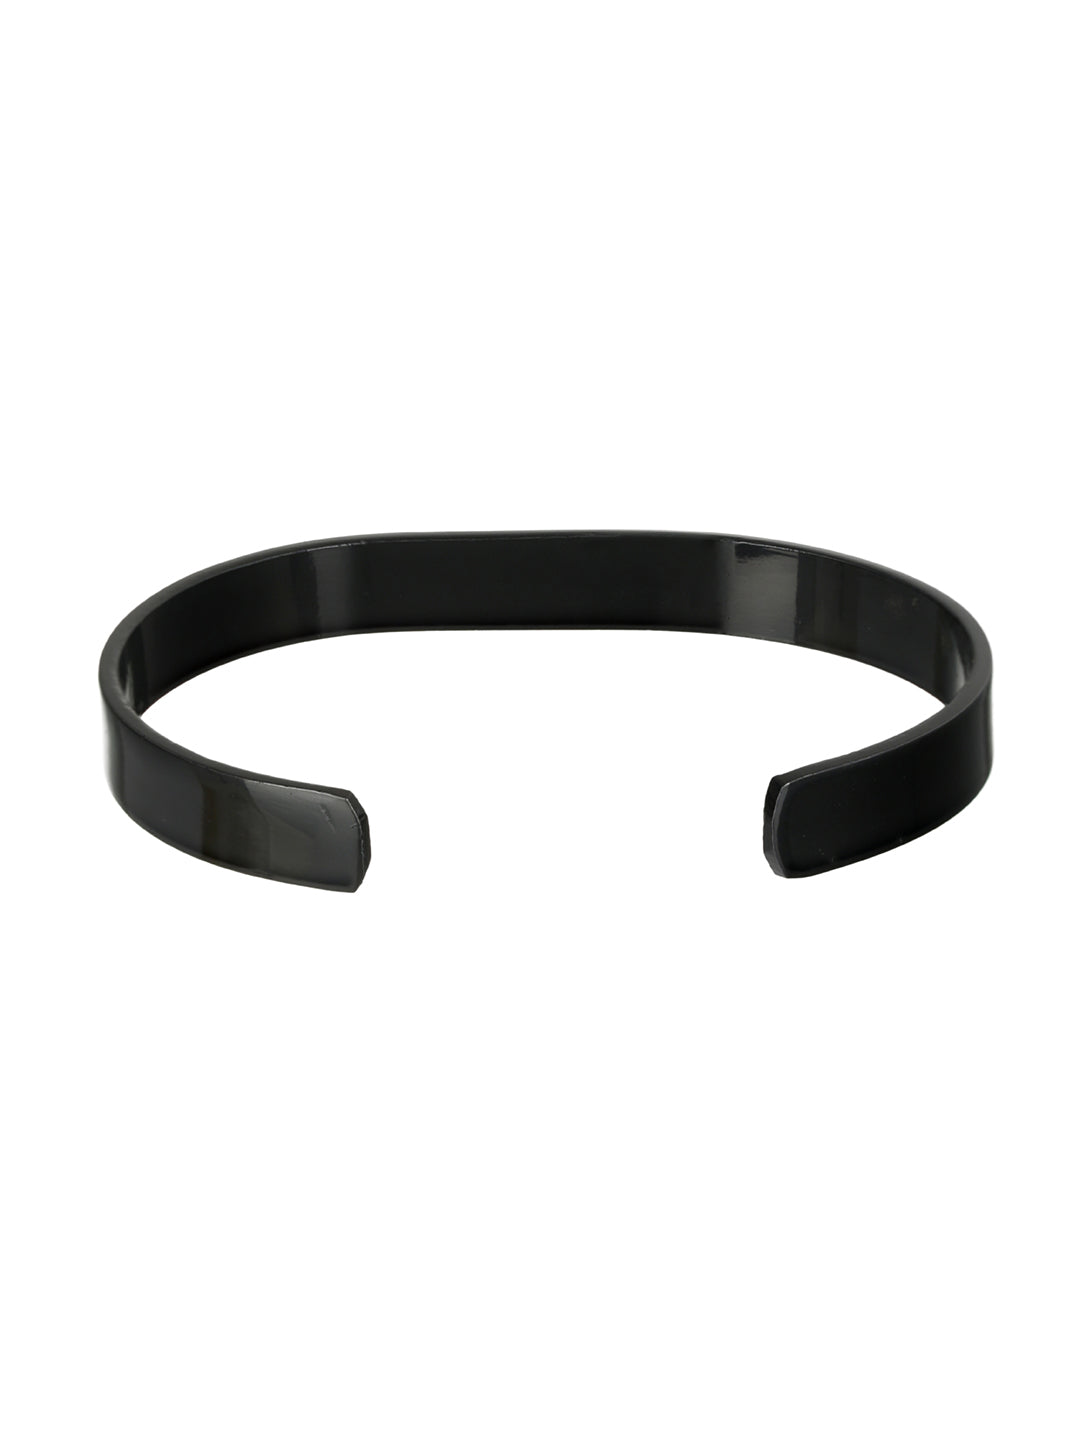 Solid Black Cuff Bracelet for Men